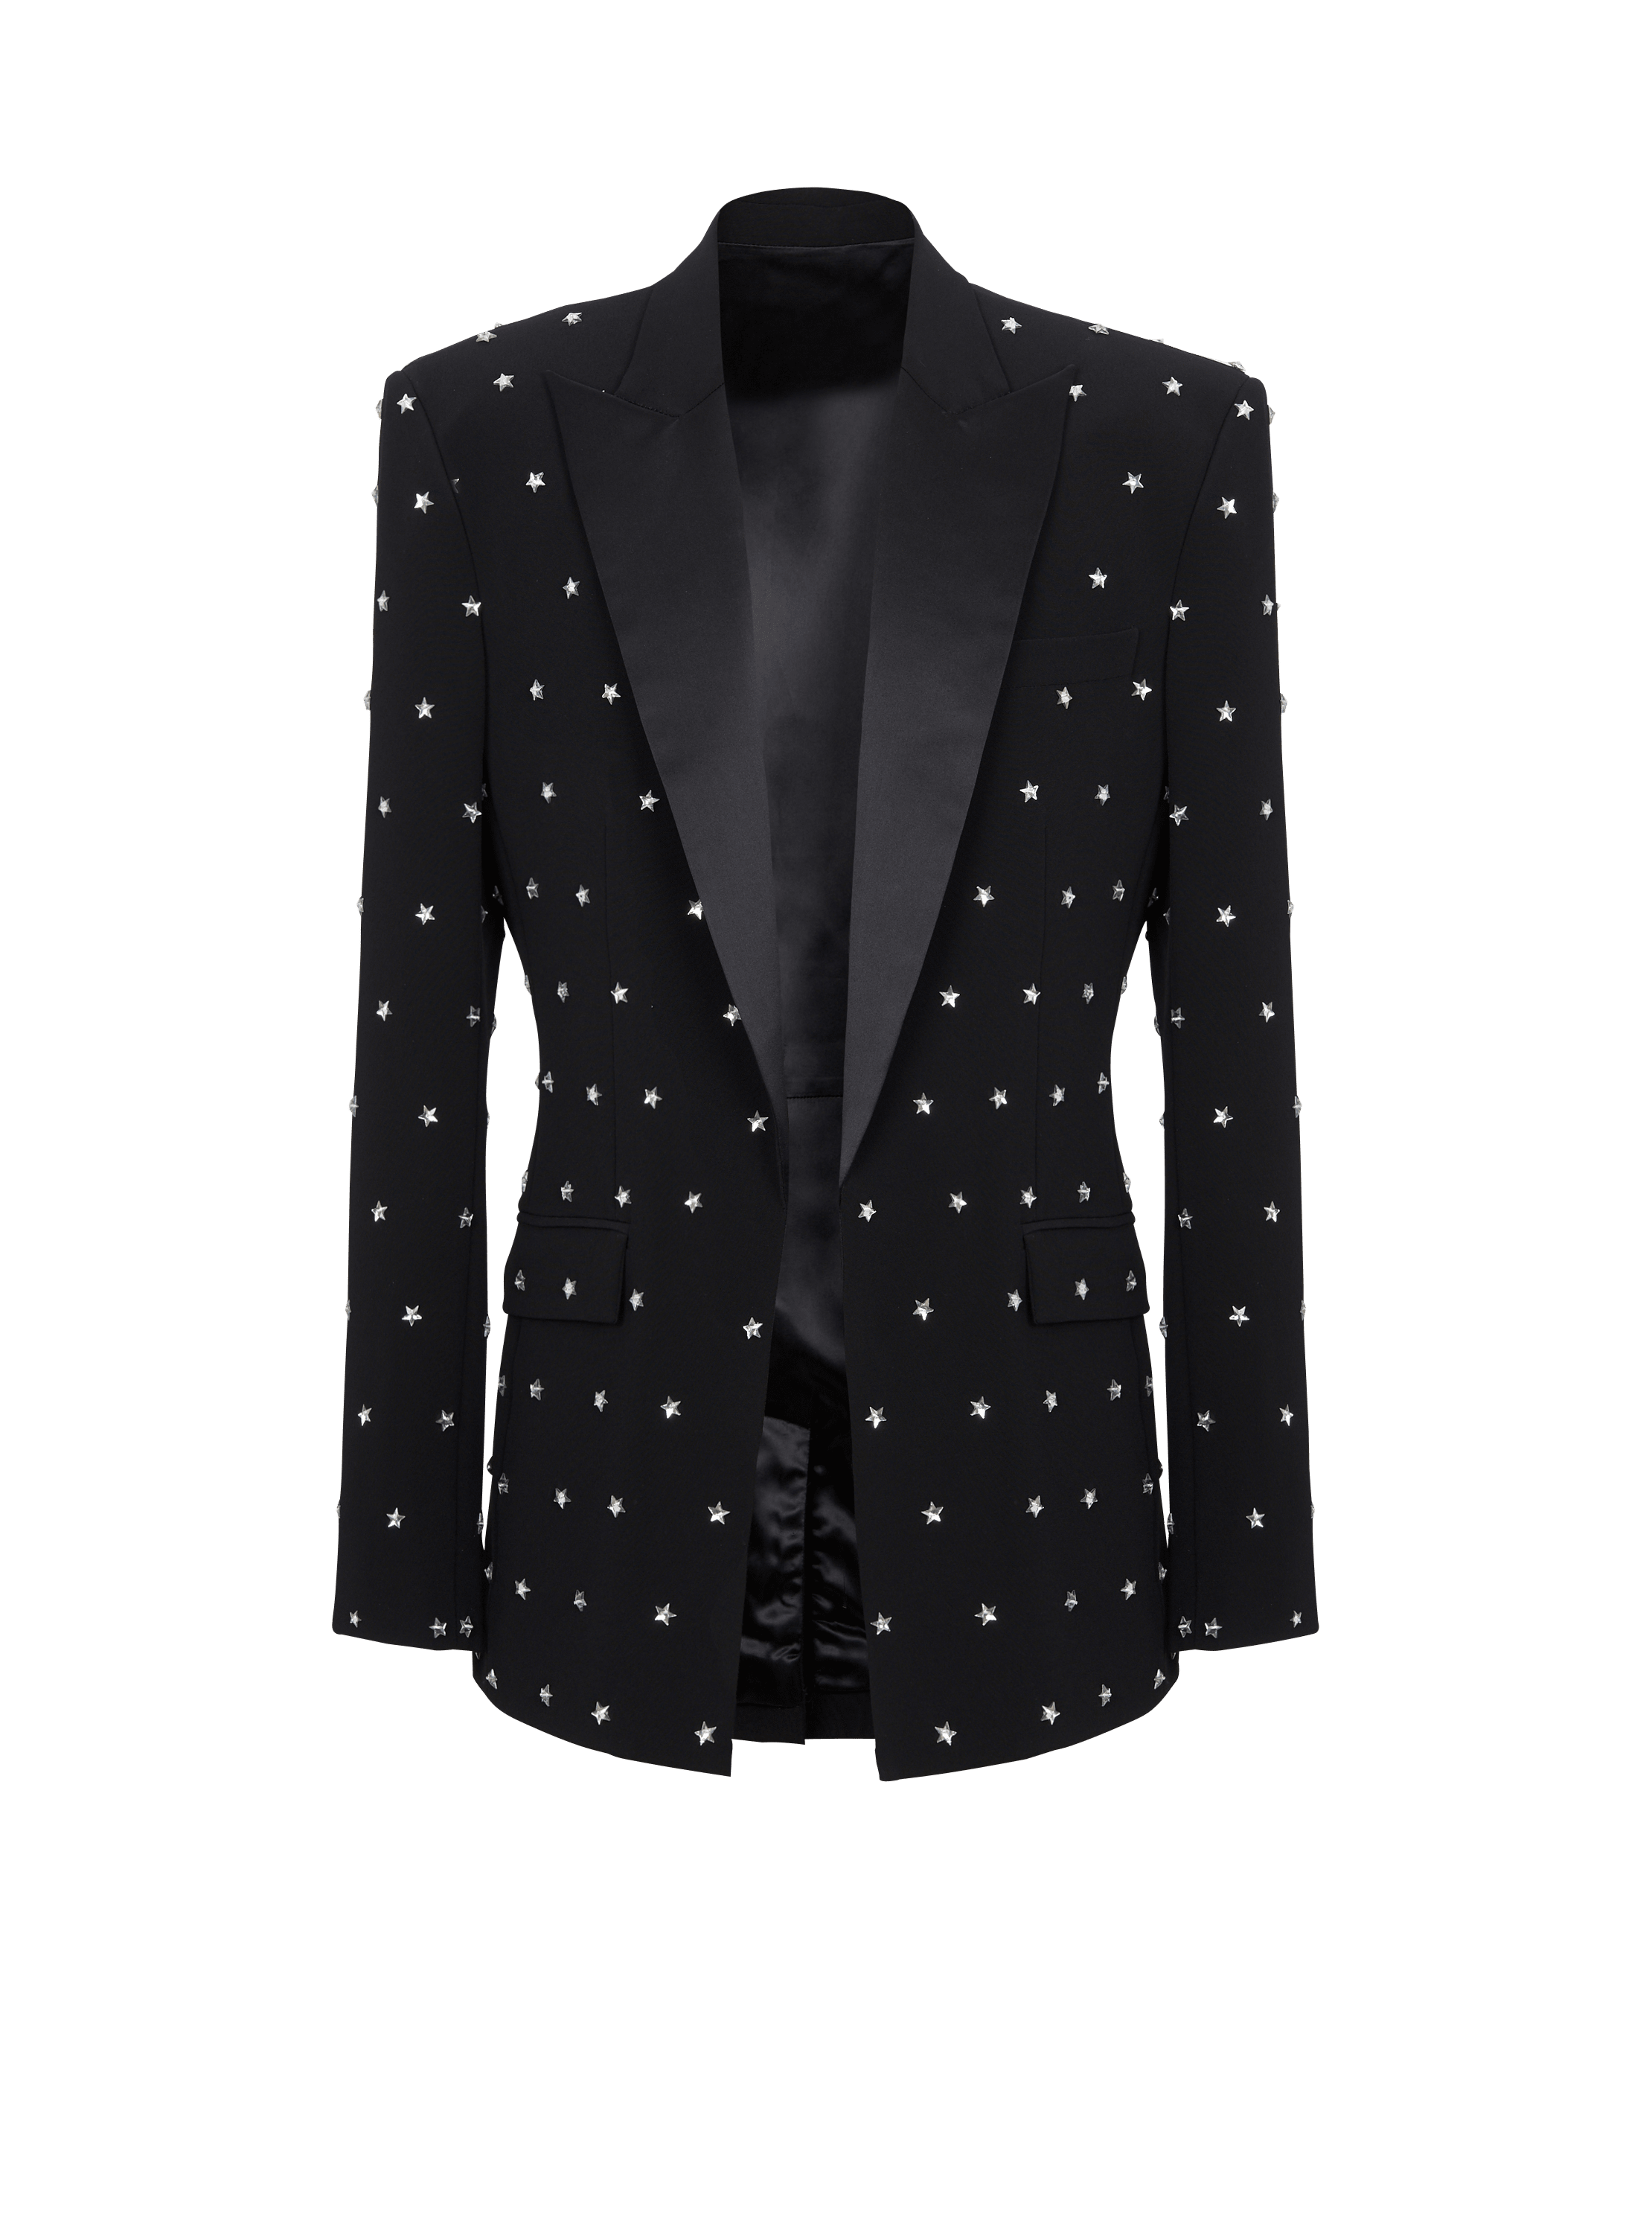 Stars embroidered jacket, black, hi-res